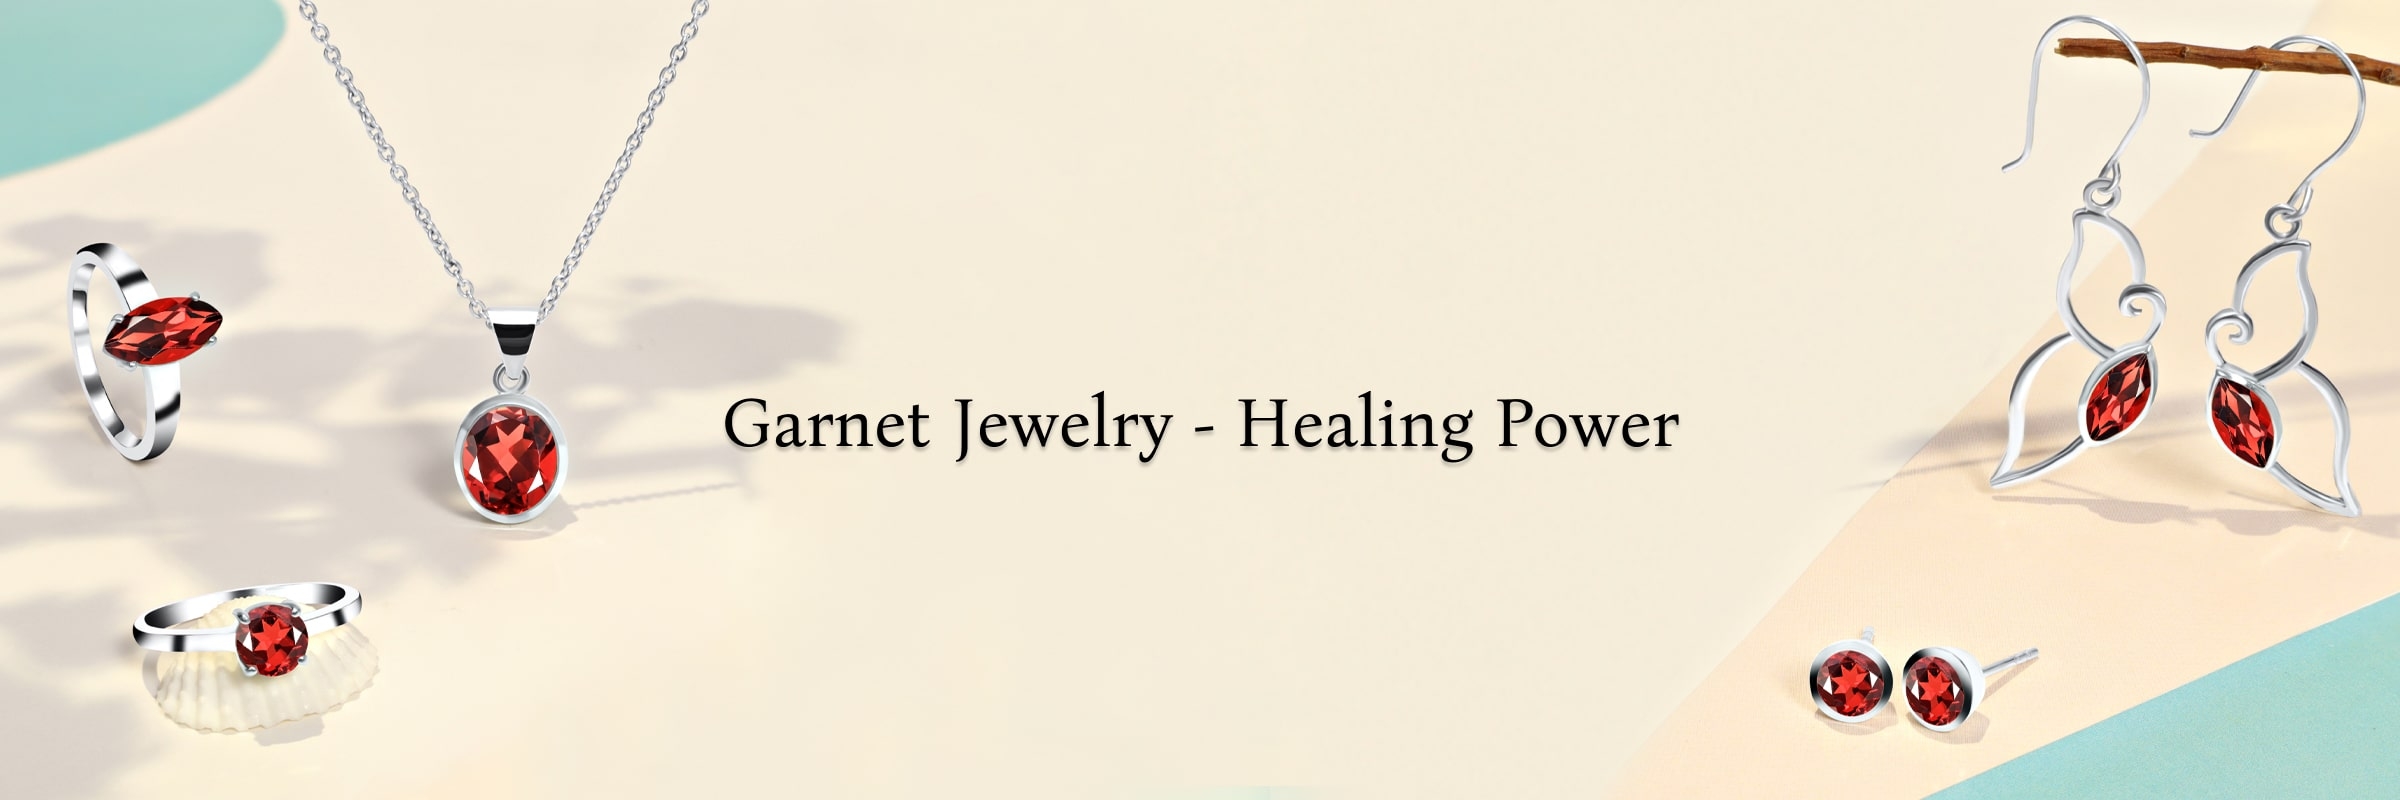 Heal Yourself by Wearing Garnet Jewelry